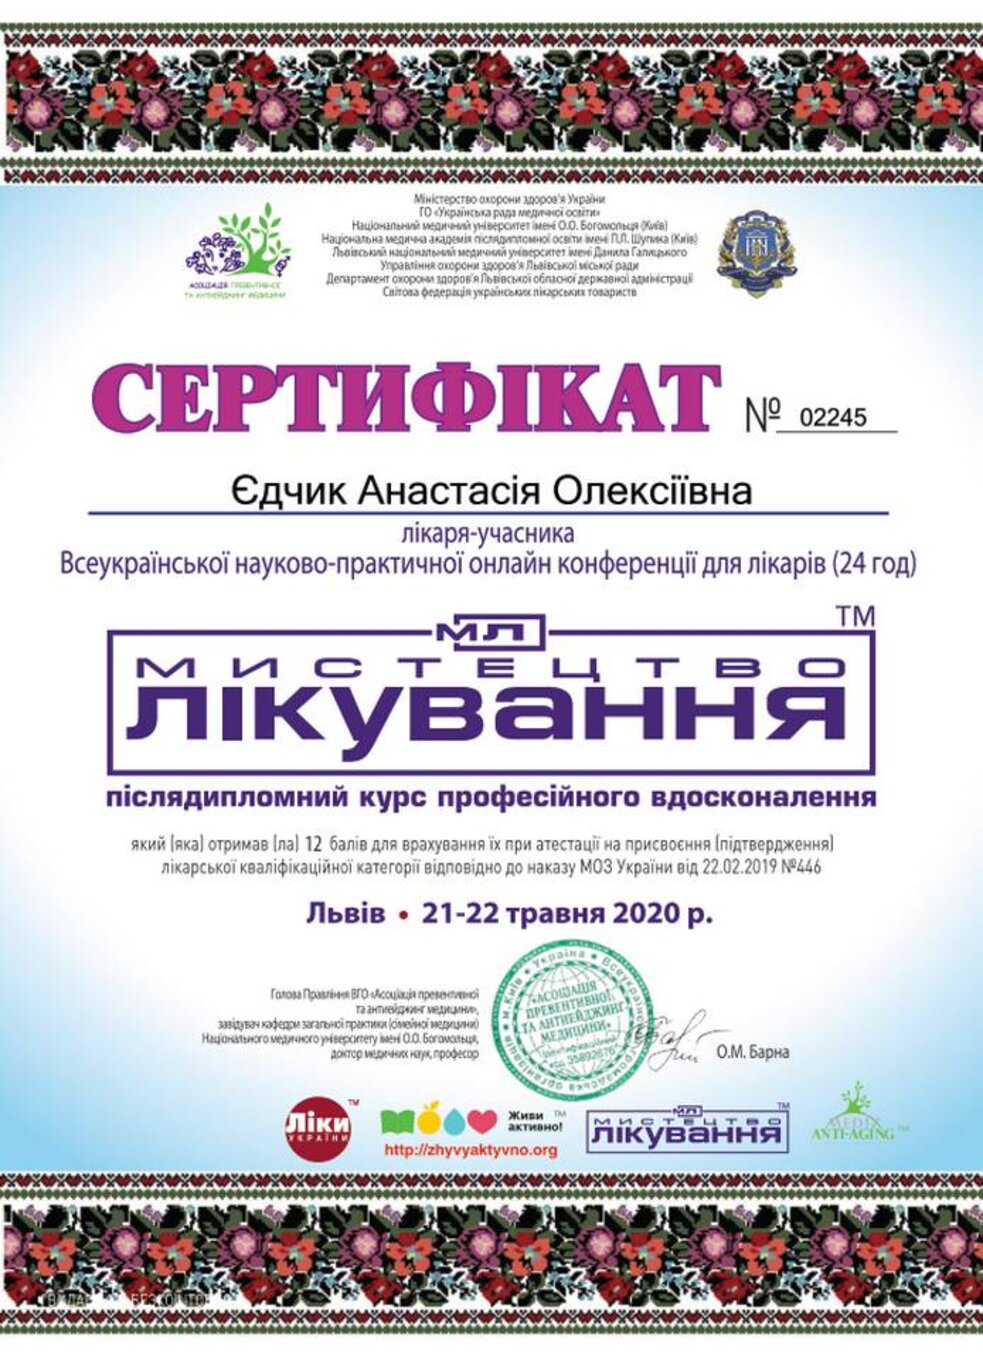 certificates/yedchik-anastasiya-oleksiyivna/erc-edchik-cert-96.jpg